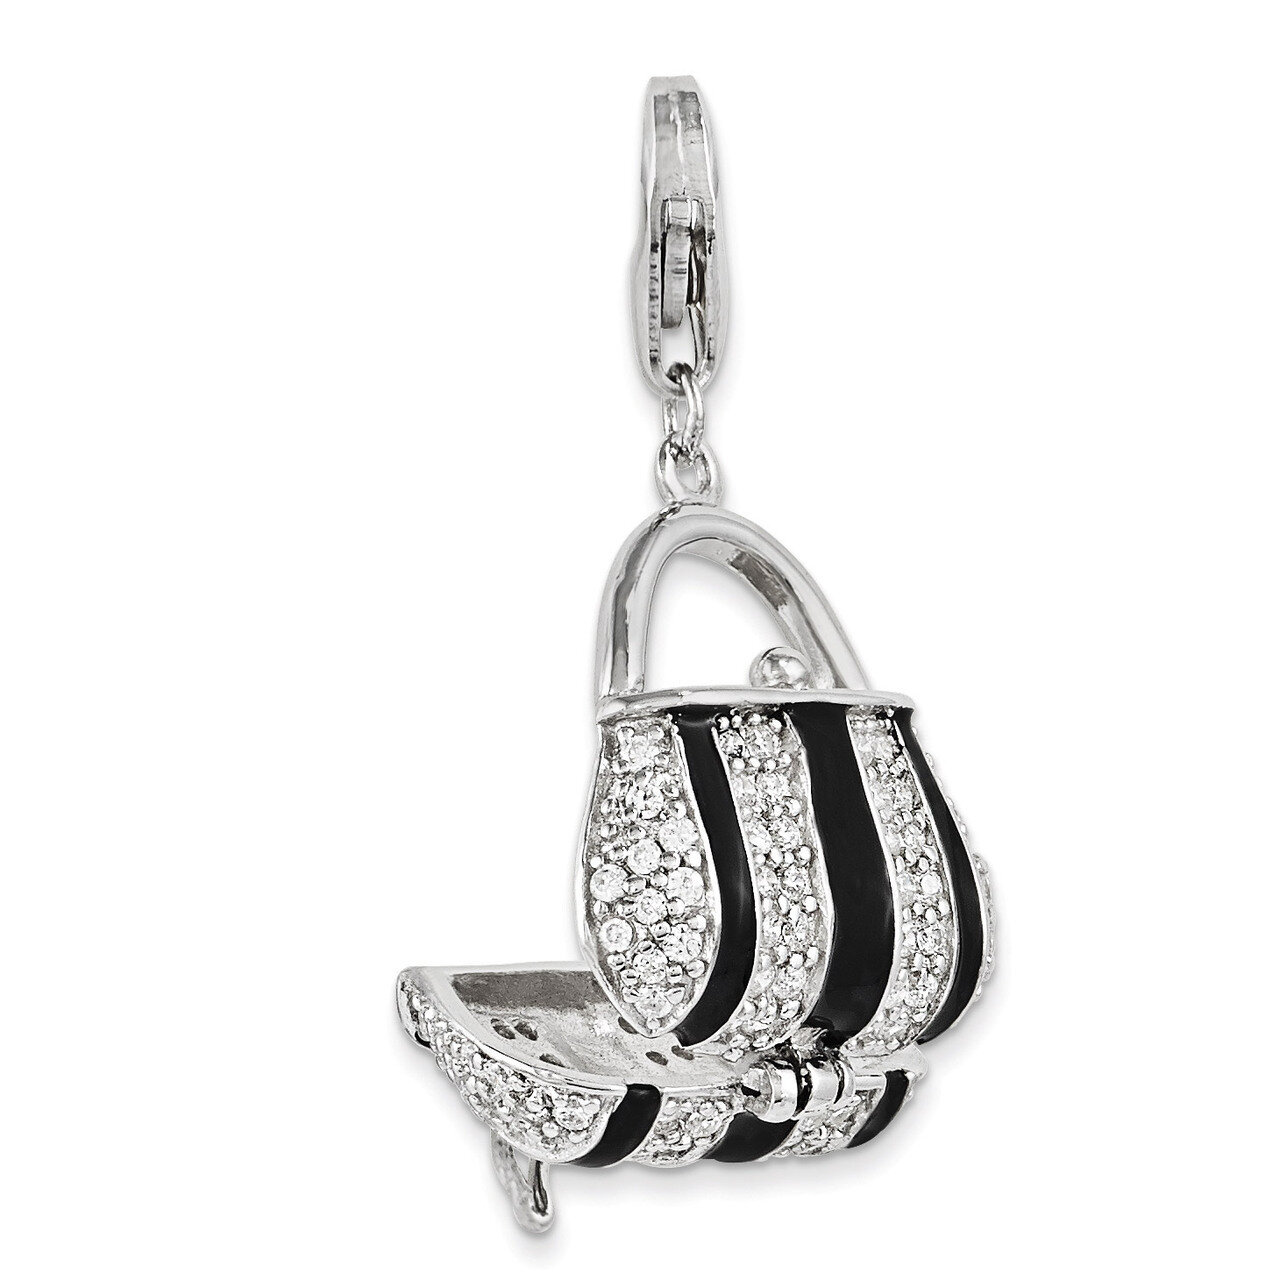 Black Enameled Synthetic Diamond Handbag Charm Sterling Silver QCC996